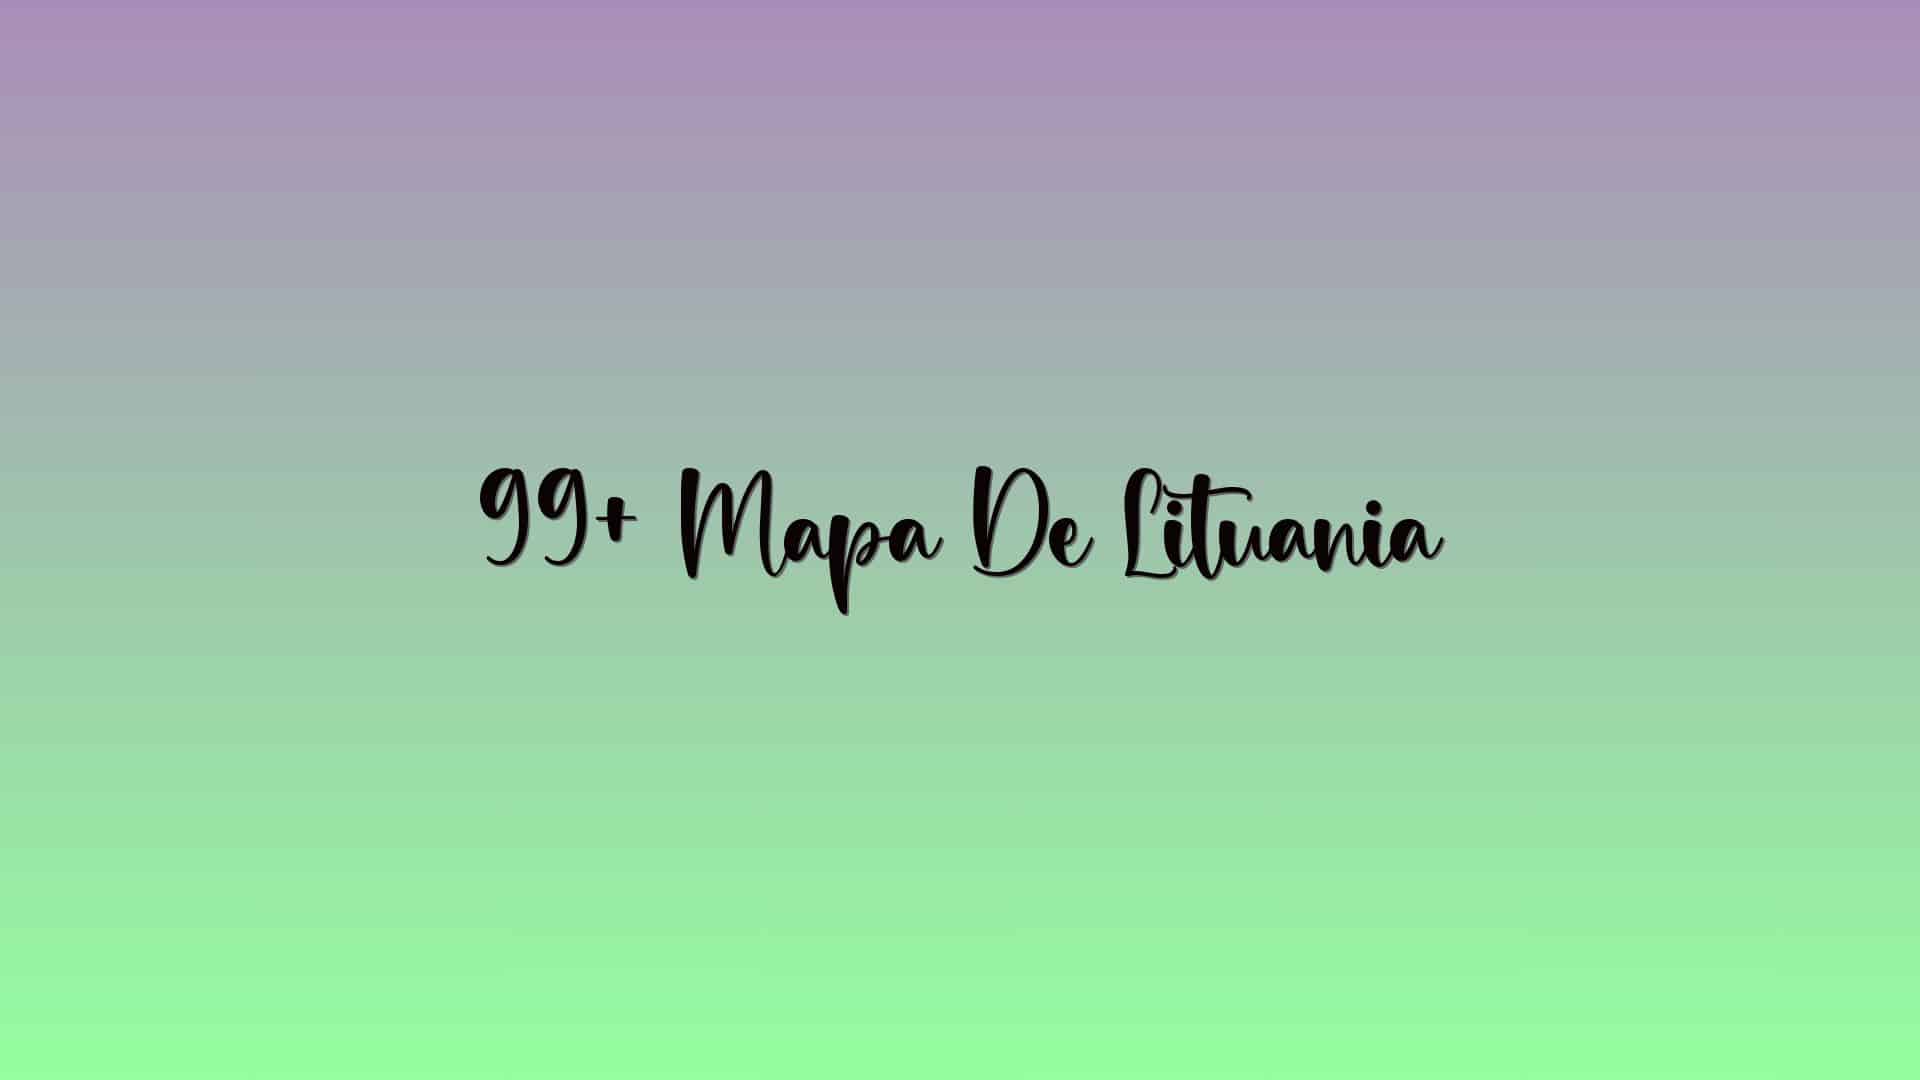 99+ Mapa De Lituania